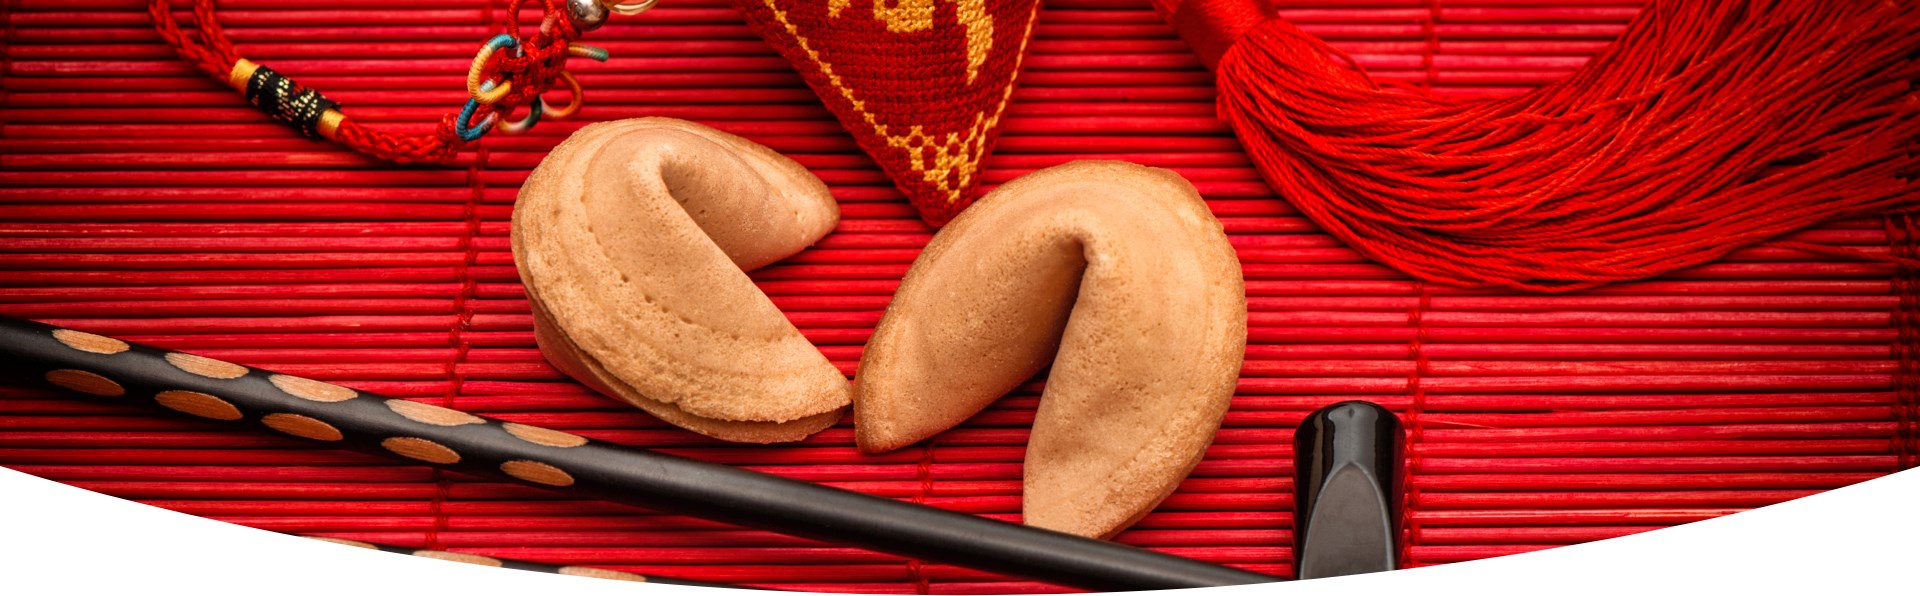 2 biscotti della fortuna con decorazioni asiatiche in rosso.